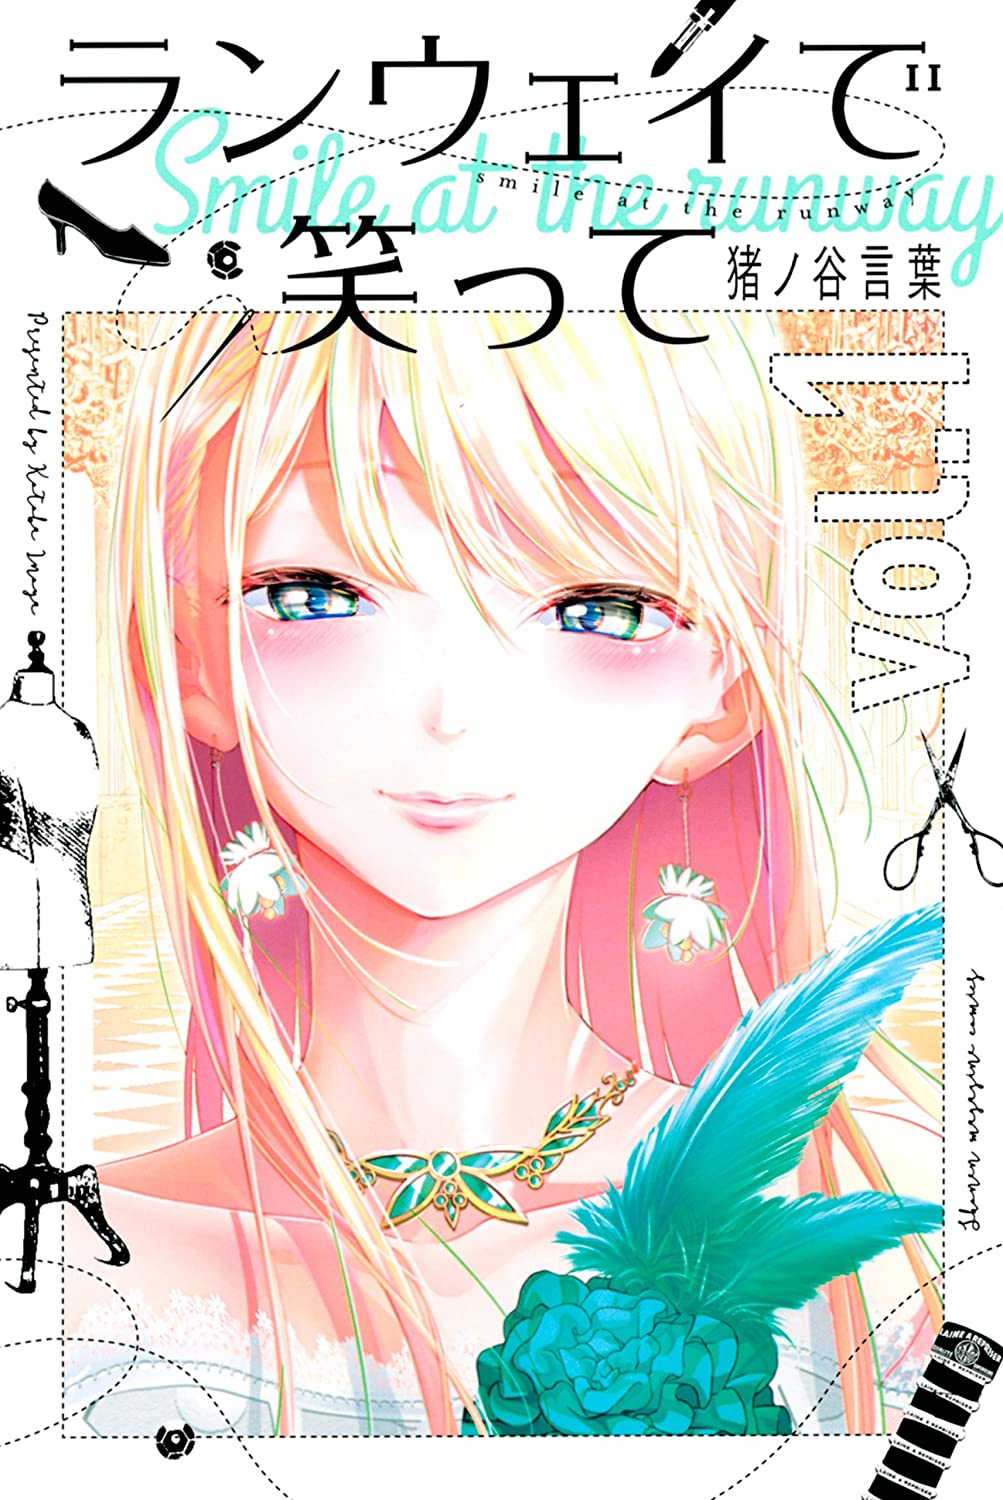 Conheça os Mangás Indicados ao 44º Kodansha Manga Awards 2